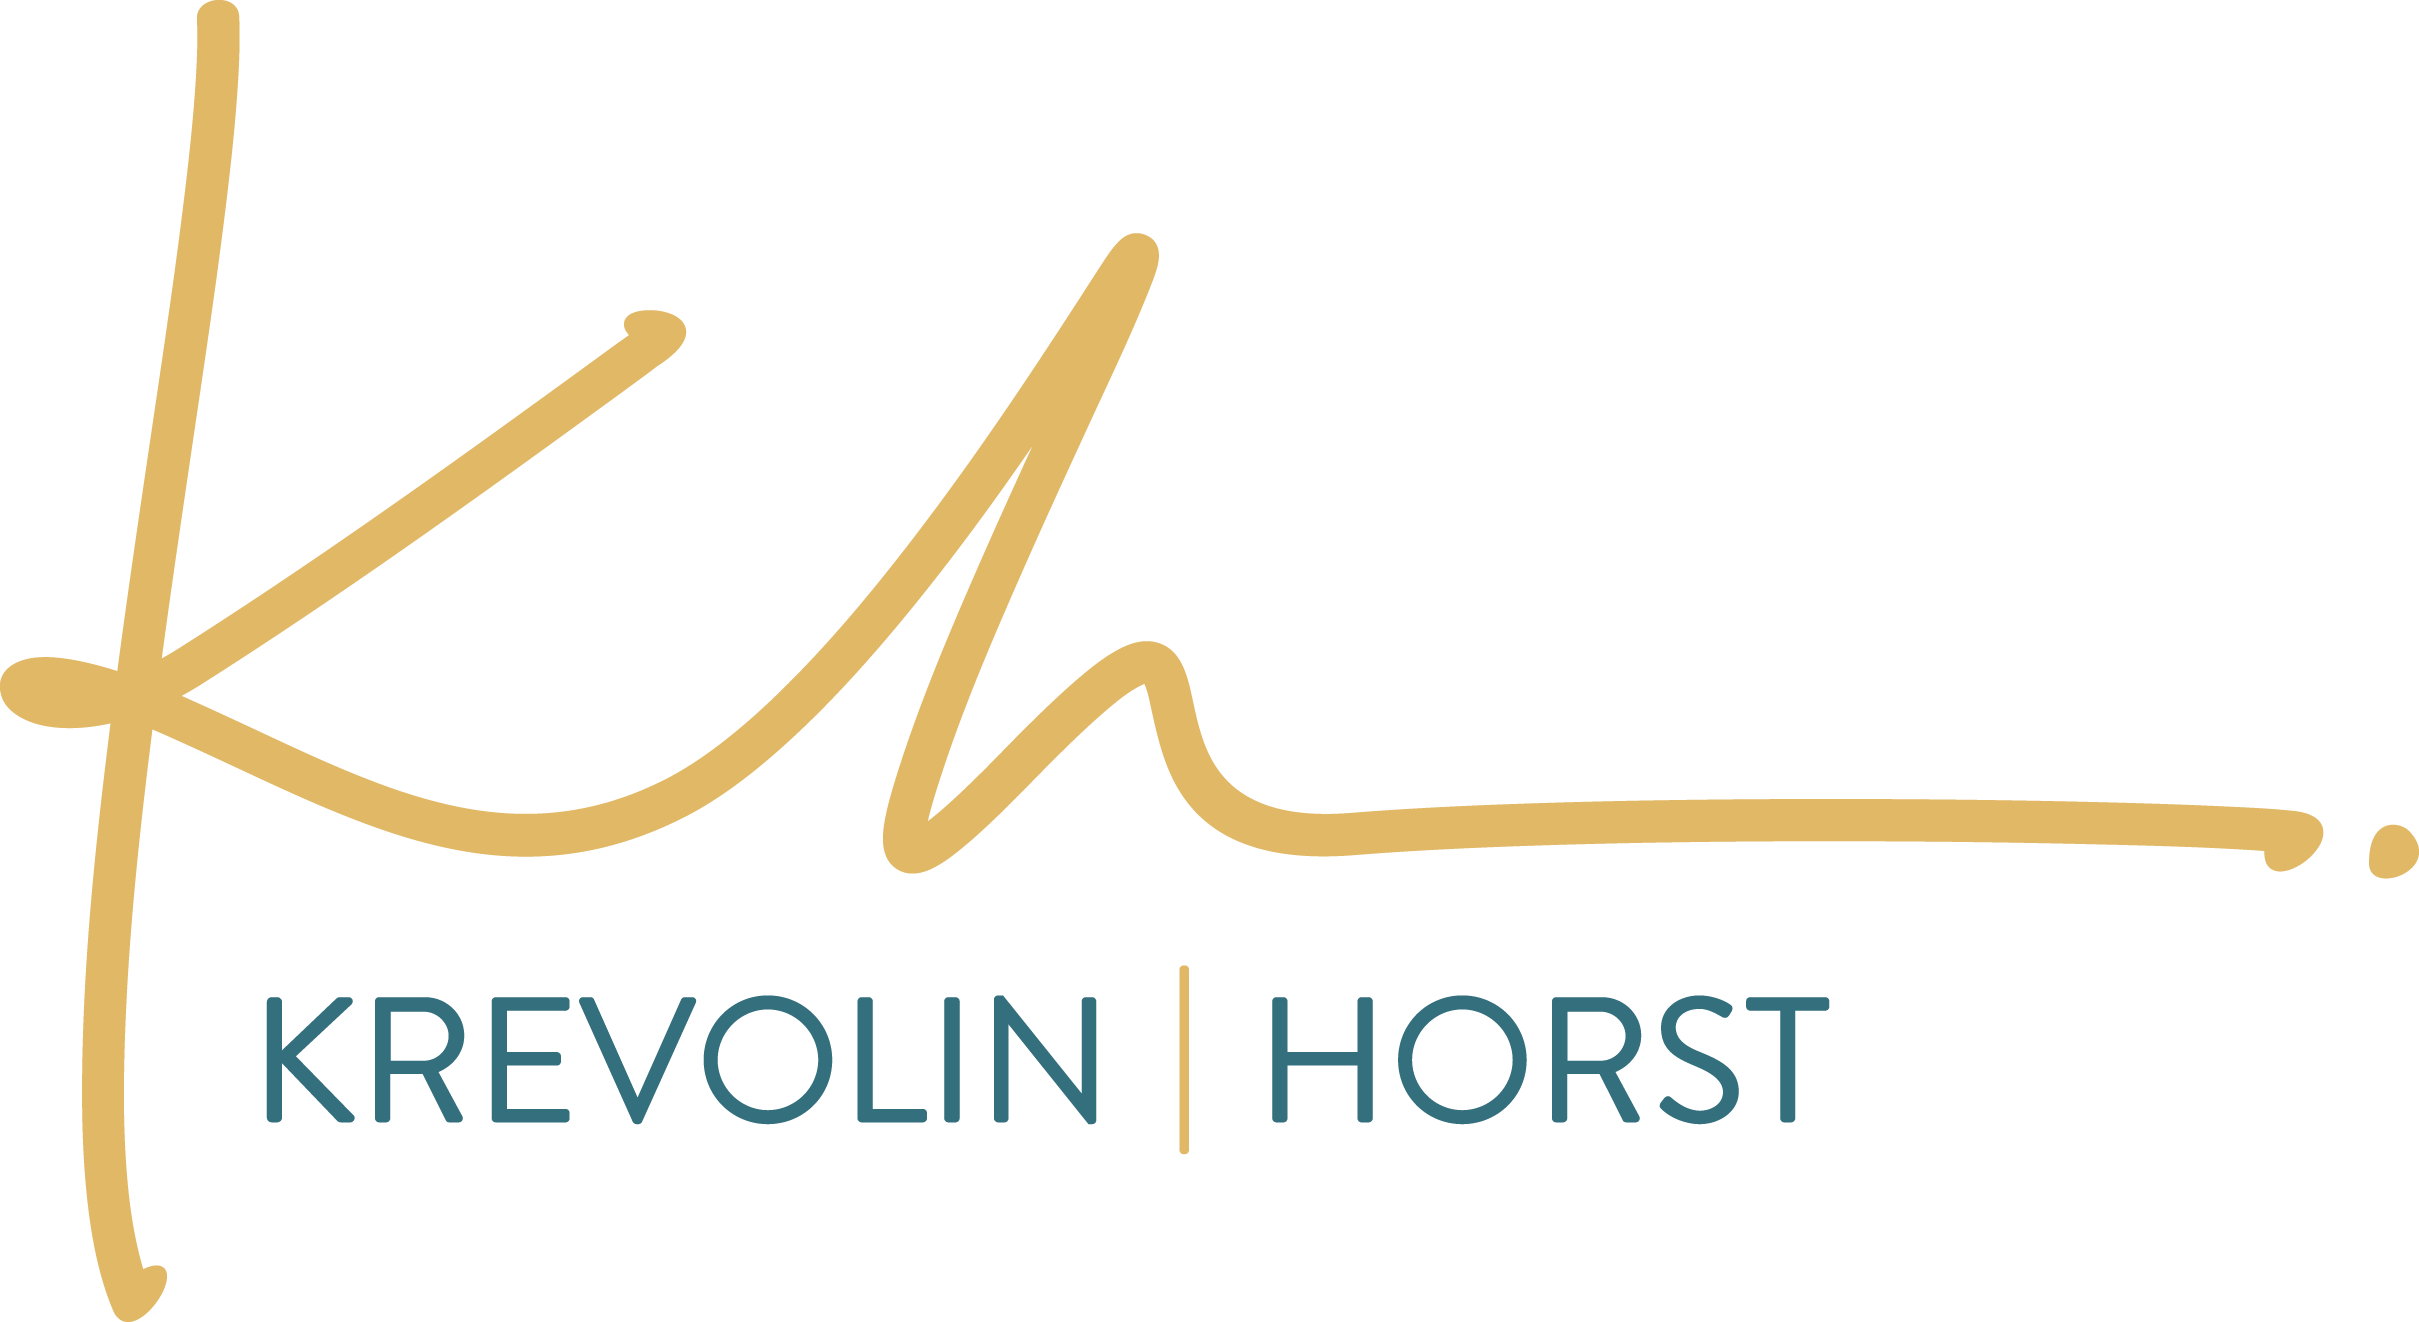 Krevolin & Horst LLC